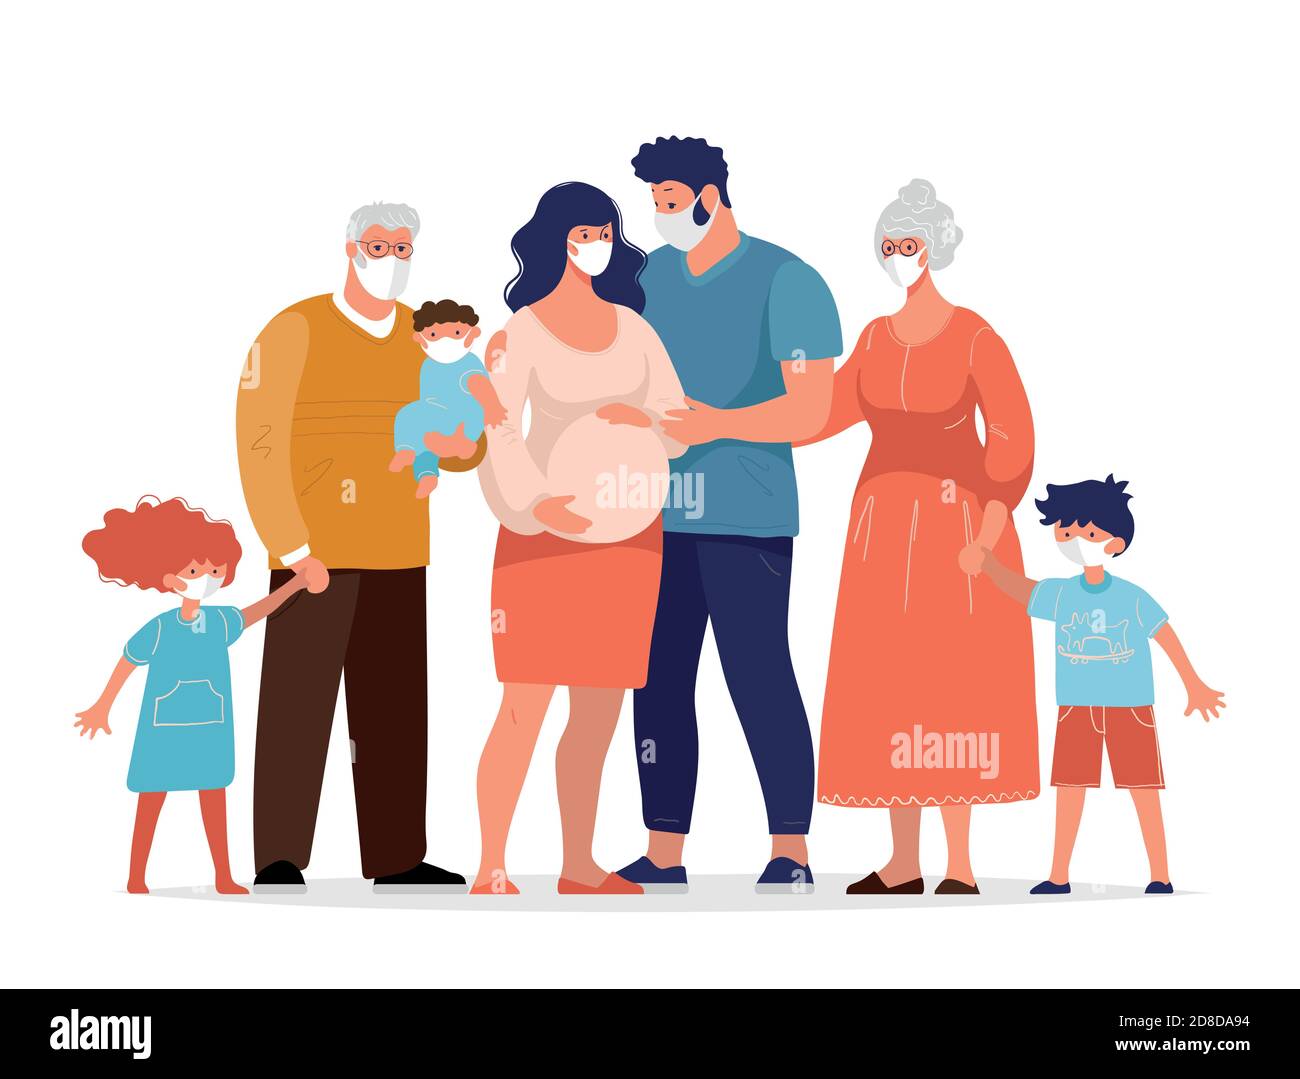 Zum Schutz vor dem Coronavirus verwendet die Familie medizinische Masken. Schwangere Frau mit ihrem Mann, Kinder, Großeltern gegen die Ausbreitung des Coronavirus. Flache Cartoon-Vektor-Illustration Stock Vektor